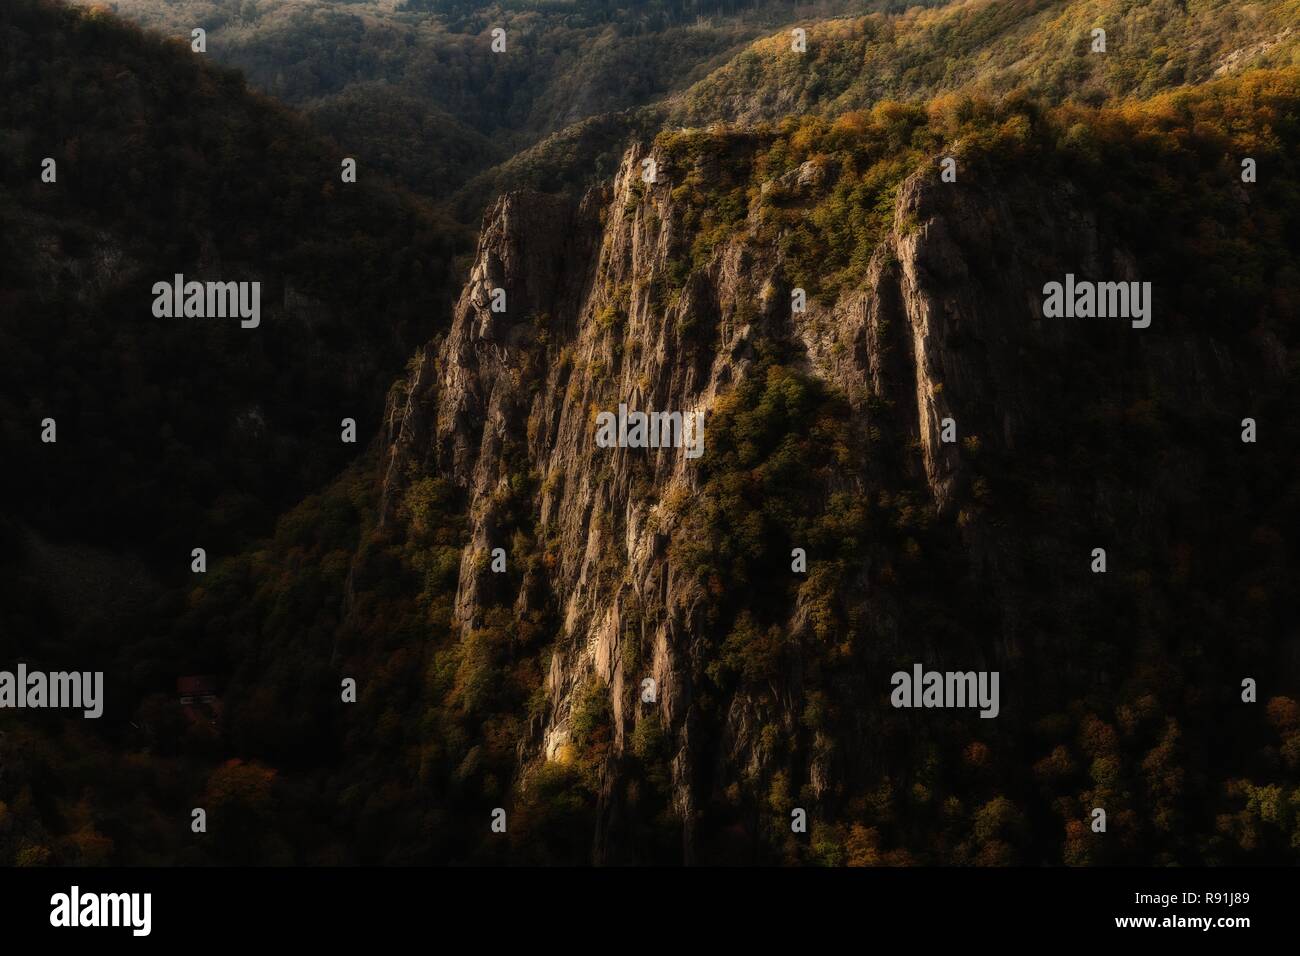 La montagne mystérieuse avec un énorme rocher dans une forêt nature sauvage dans la vallée de Bode canyon. Banque D'Images